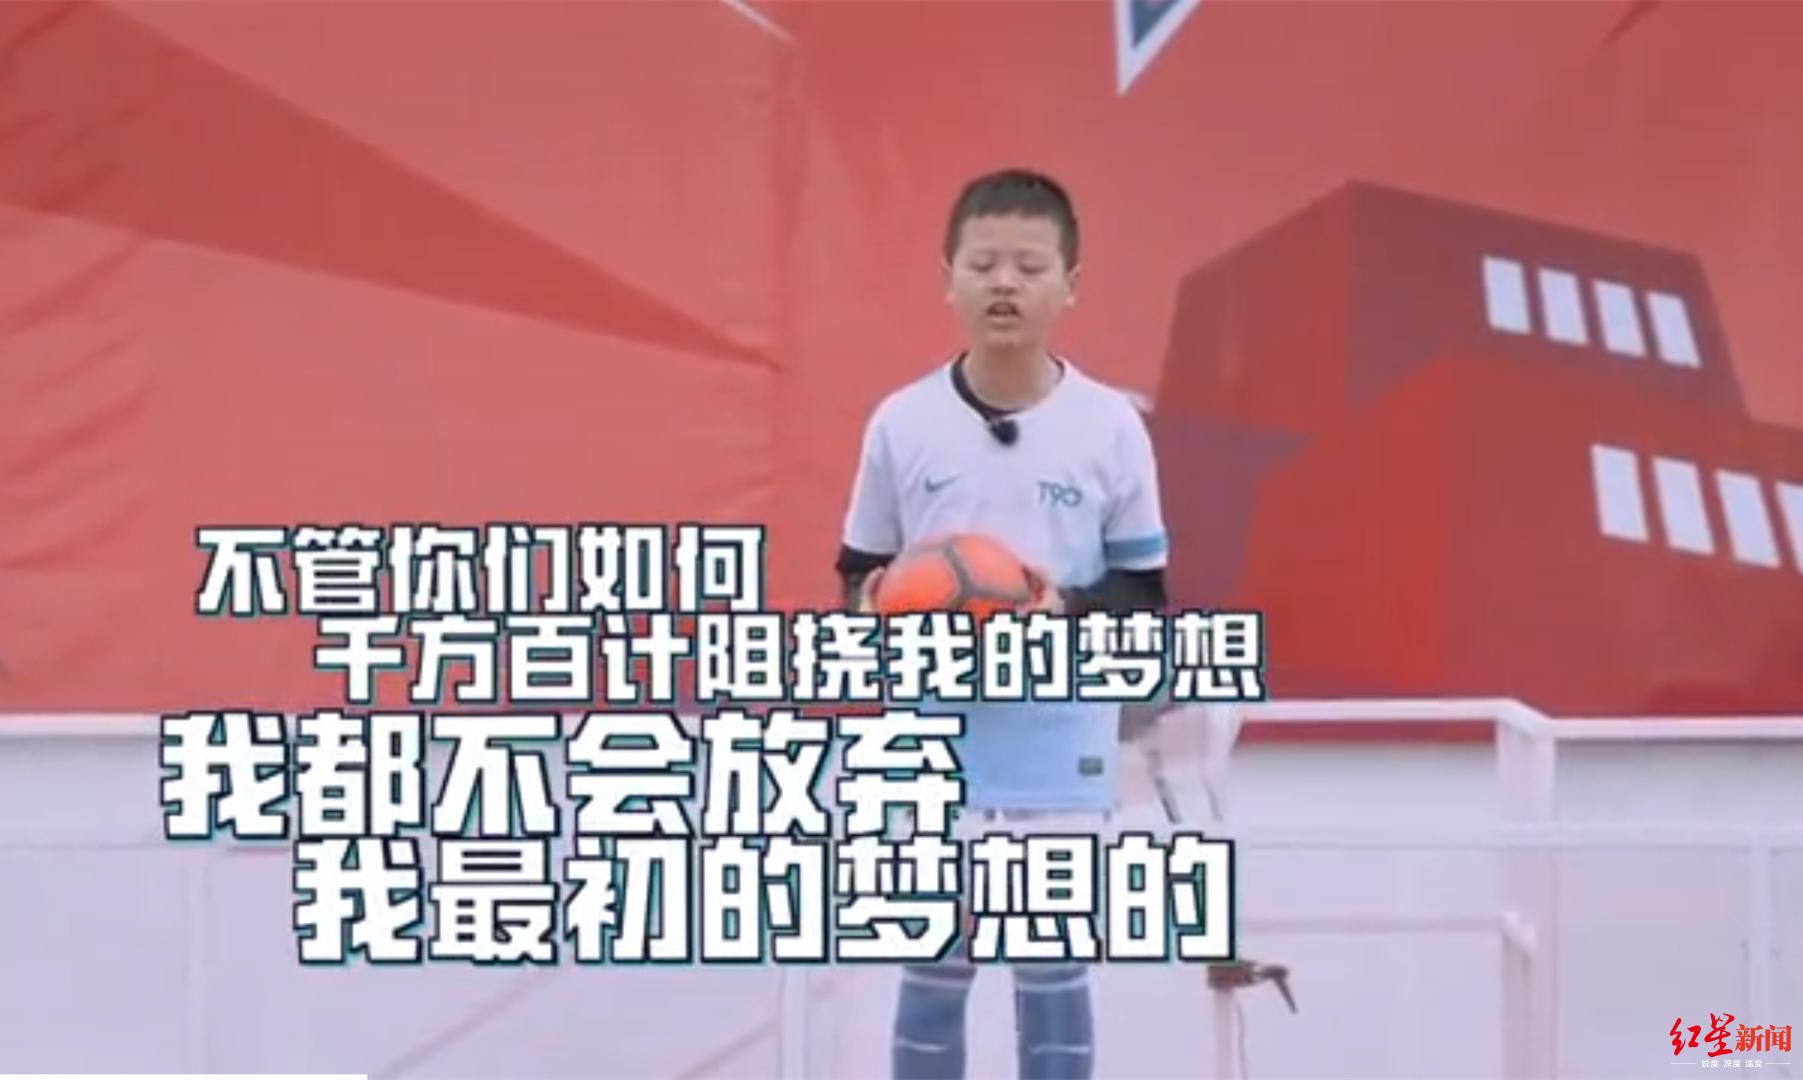 足球少年被母亲泼冷水后续:贵州队邀试训 家长或让步_陈昱